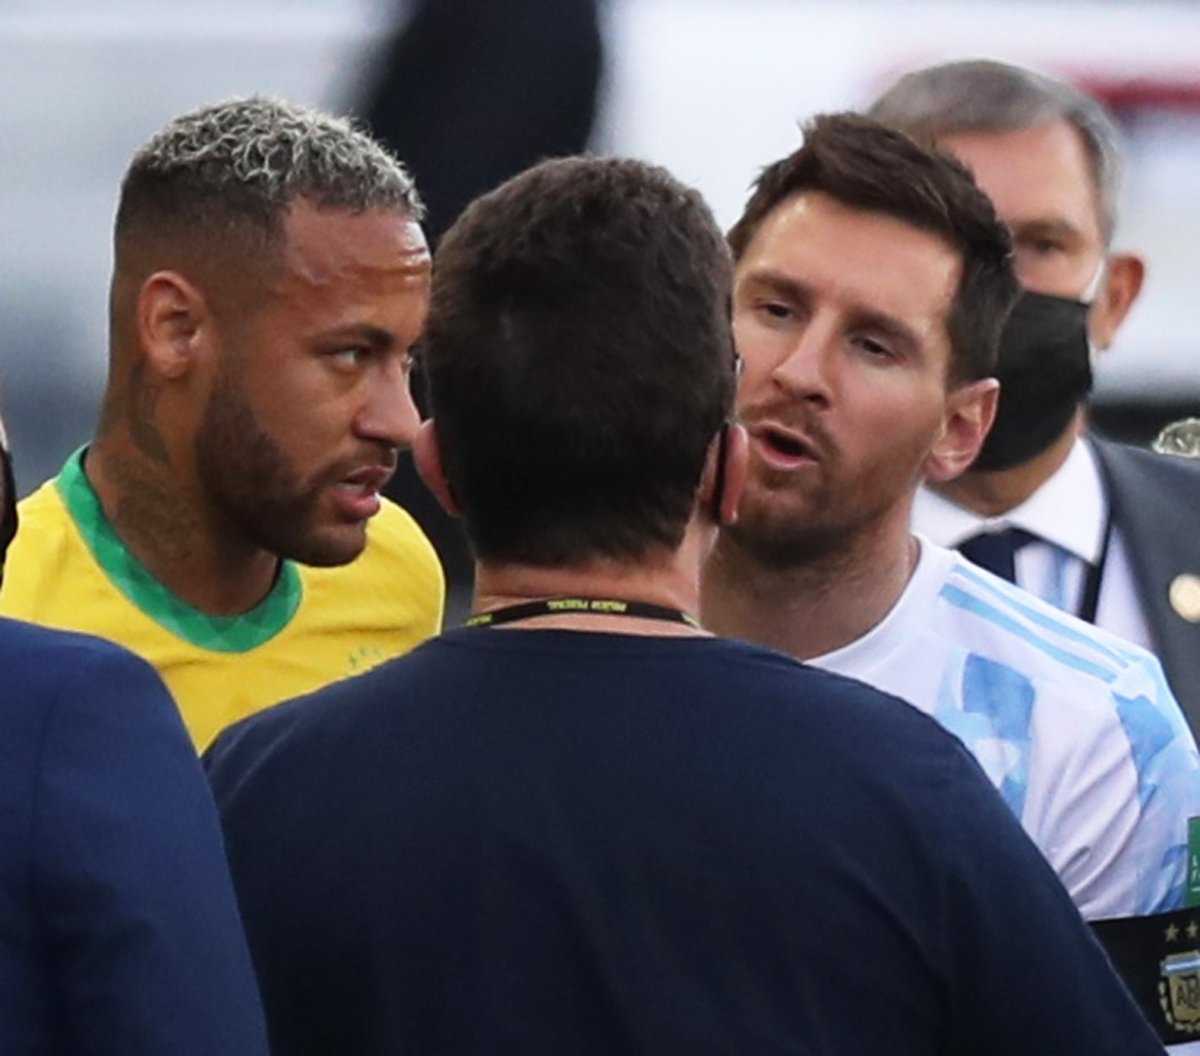 "Pourquoi ne nous ont-ils pas prévenus avant?" - Lionel Messi agacé après la suspension du match Argentine vs Brésil